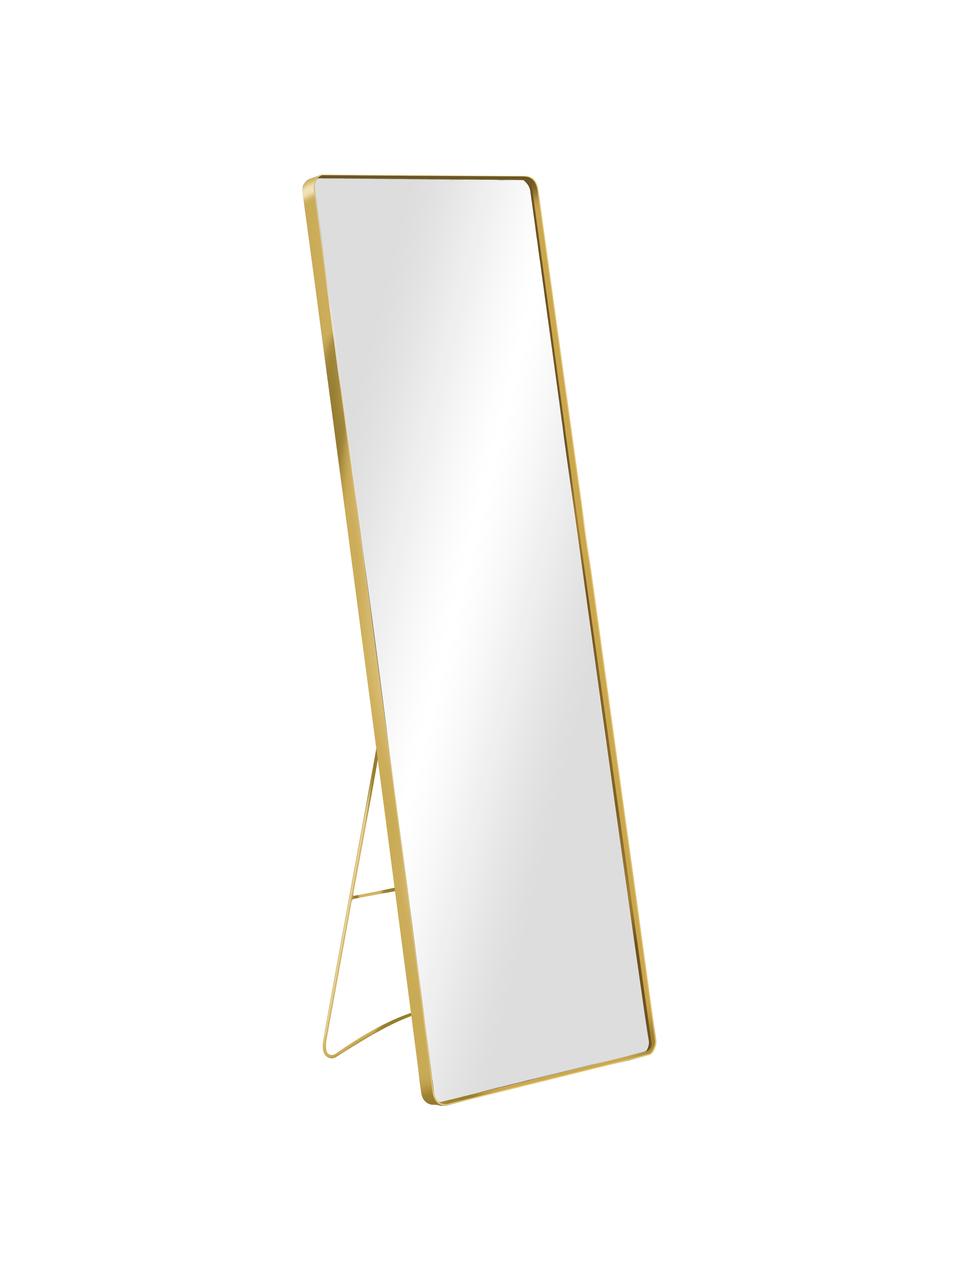 Eckiger Standspiegel Stefo mit goldenem Metallrahmen, Rahmen: Metall, beschichtet, Spiegelfläche: Spiegelglas, Goldfarben, B 45 x H 140 cm